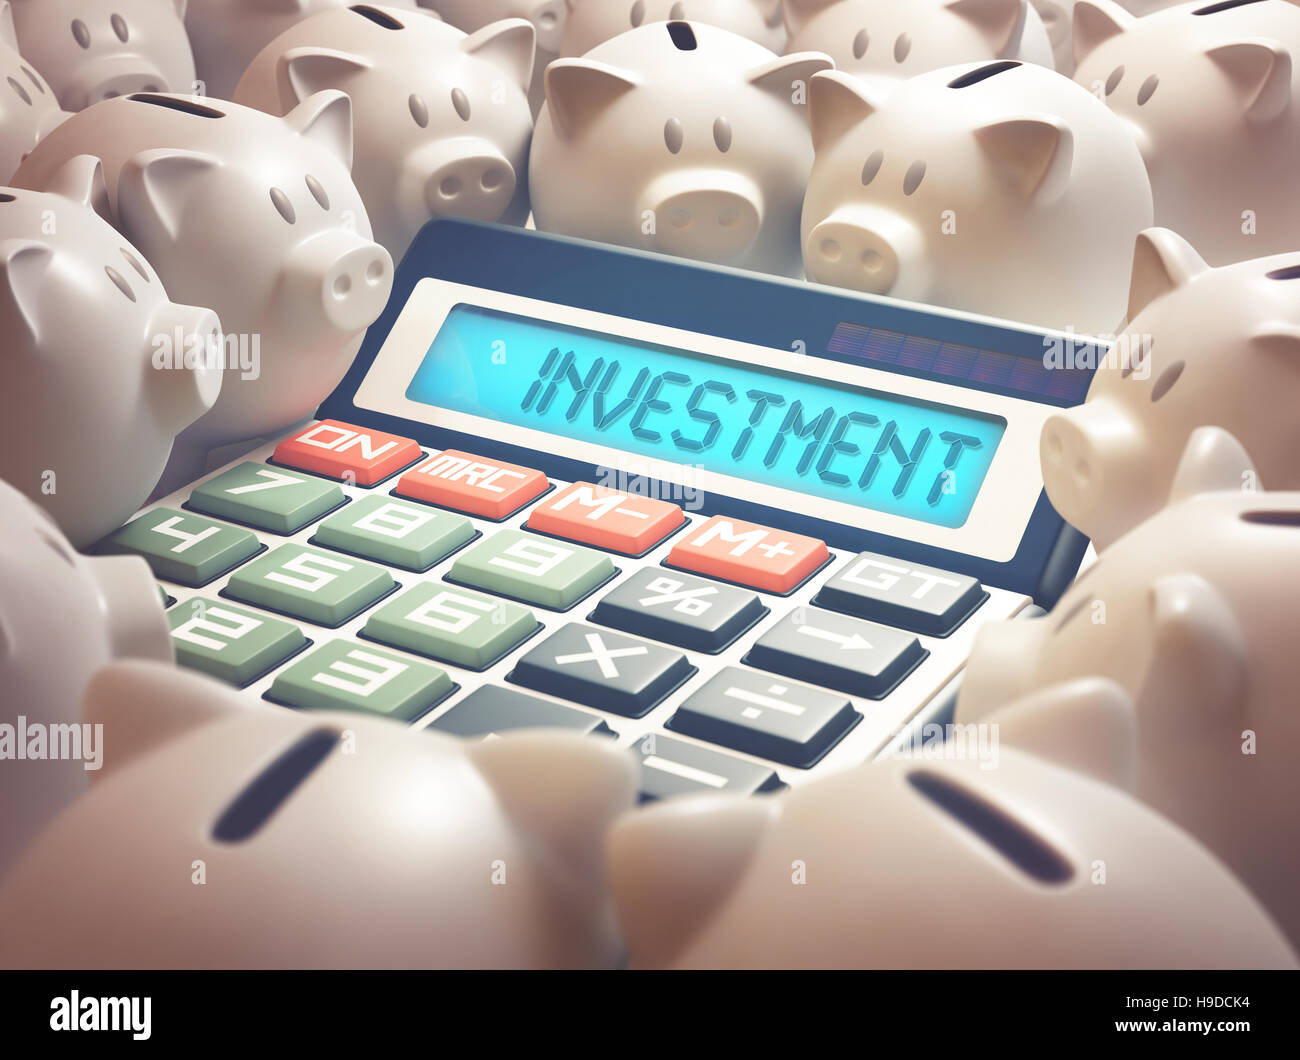 La calcolatrice in mezzo alle diverse banche piggy mostra sul display la parola "investimento". 3D'illustrazione, business e finanza concetto. Foto Stock